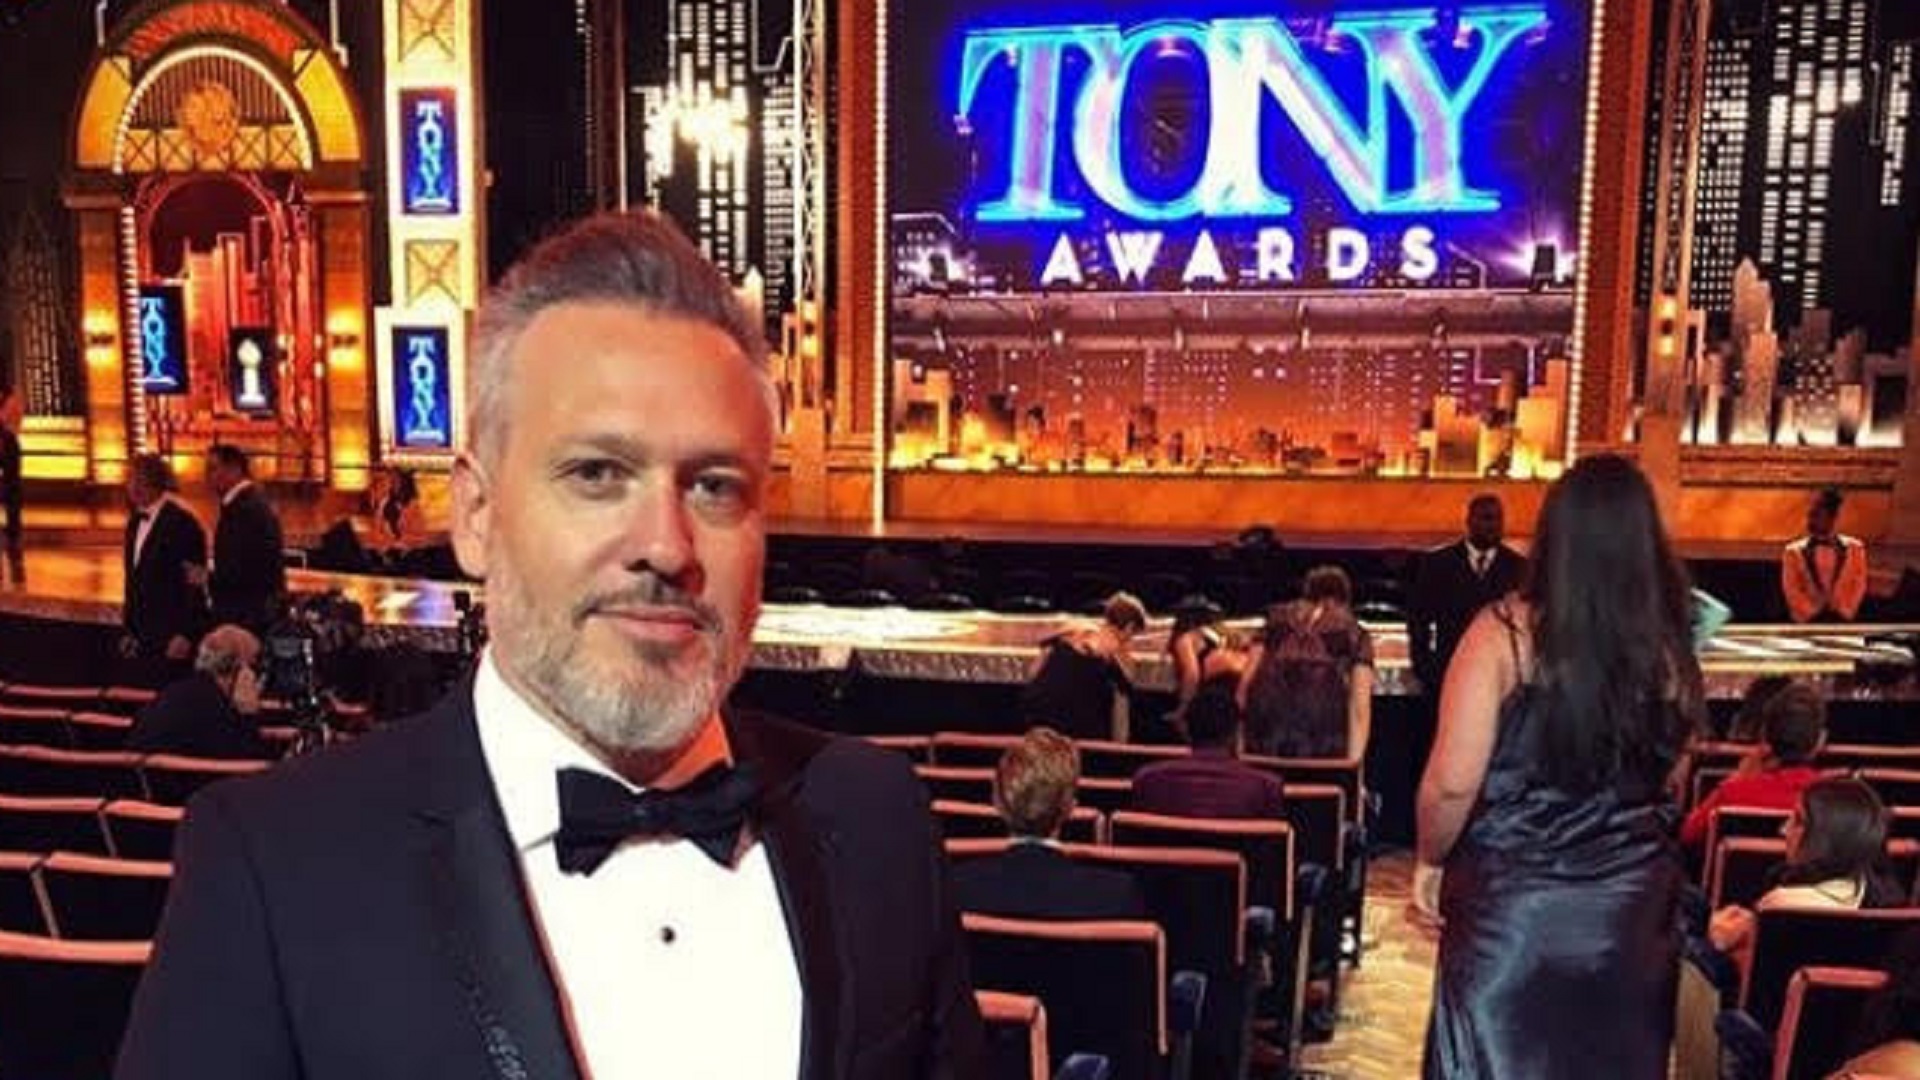 Diego Kolankowsky, a horas de los Premios Tony y listo para reestrenar Beetlejuice en Broadway: “De la pandemia va a nacer un boom artístico”